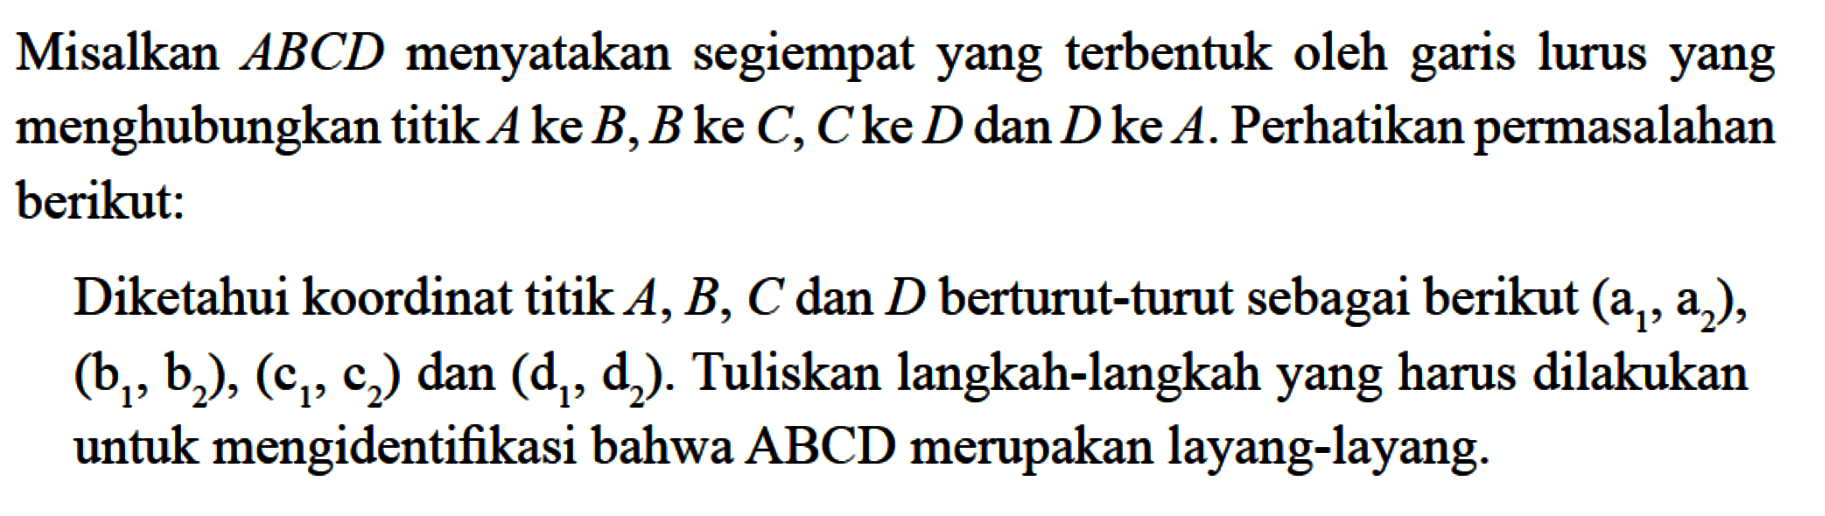 Misalkan ABCD menyatakan segiempat yang terbentuk oleh garis lurus yang menghubungkan titik A ke B, B ke C, C ke D dan D ke A. Perhatikan permasalahan berikut: Diketahui koordinat titik A, B, C dan D berturut-turut sebagai berikut (a1,a2),(b1,b2),(c1,c2) dan (d1,d2). Tuliskan langkah-langkah yang harus dilakukan untuk mengidentifikasi bahwa ABCD merupakan layang-layang. 